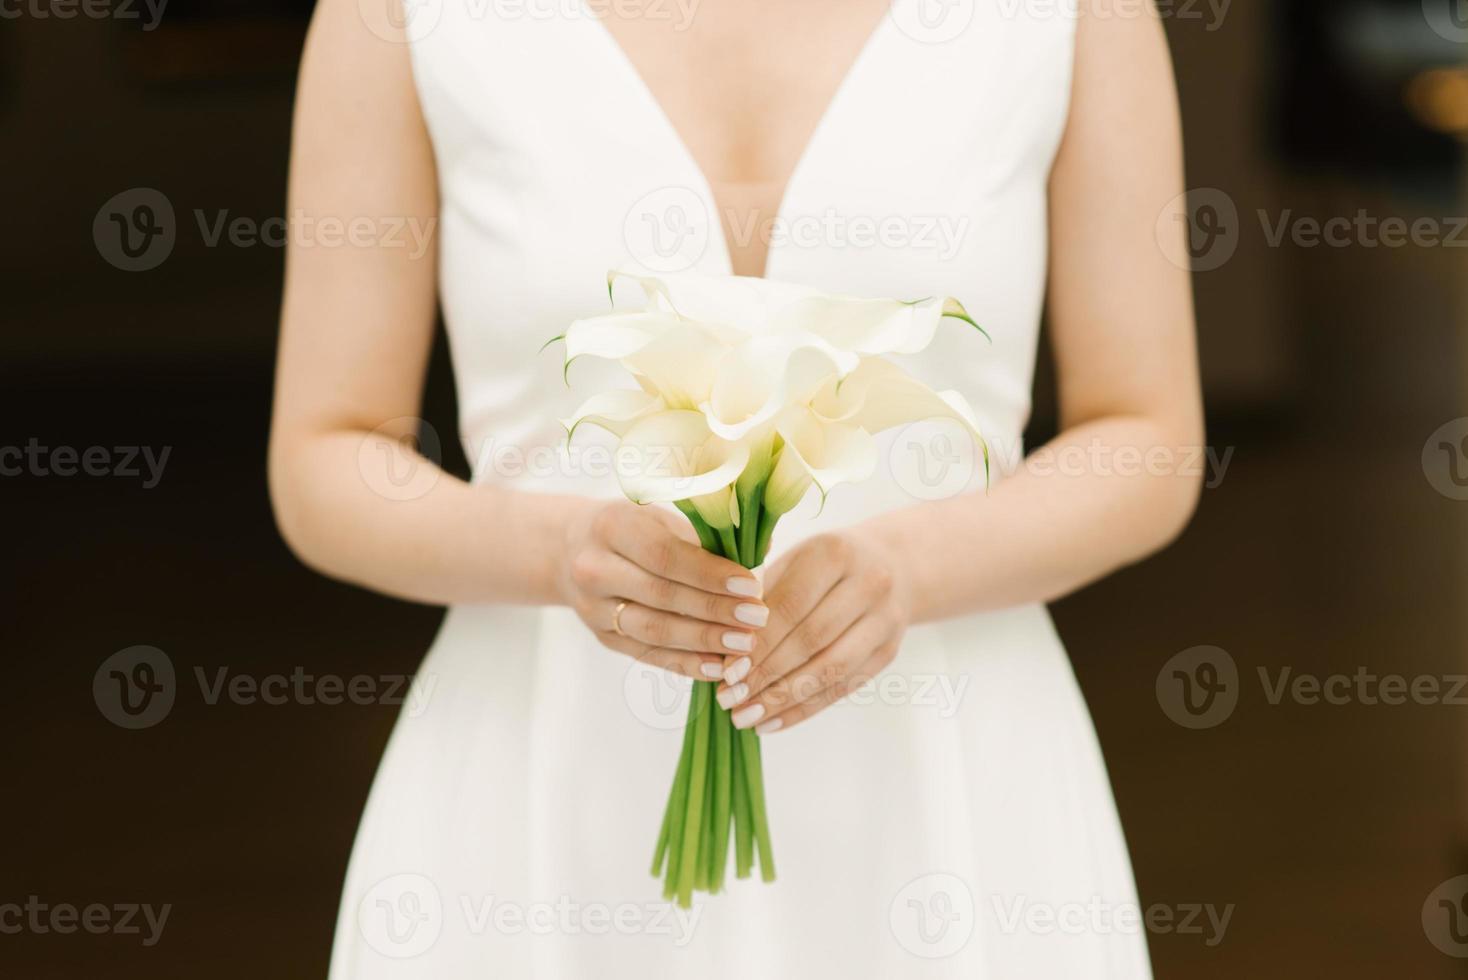 délicat bouquet blanc de lys calla entre les mains de la mariée au mariage photo